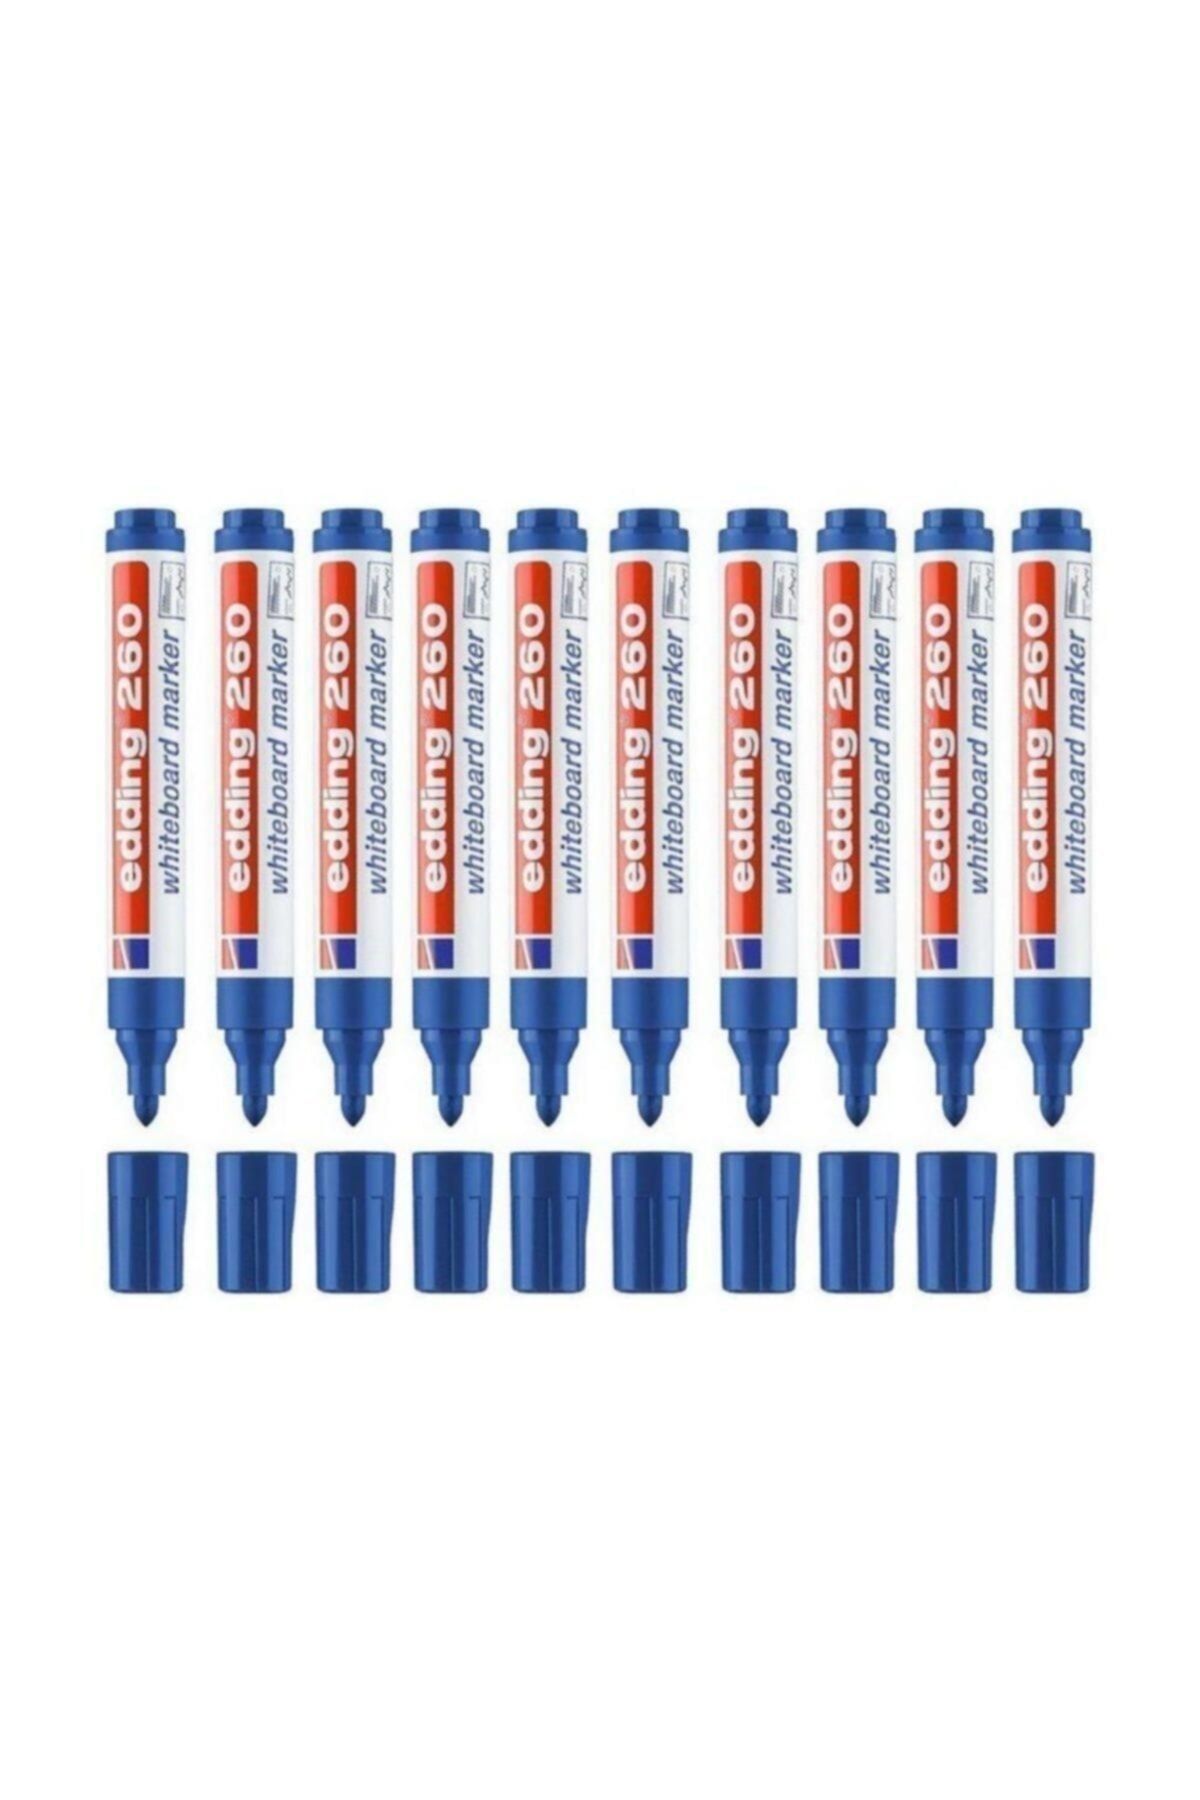 Edding Beyaz Tahta Kalemi E-260 Mavi 10 Lu Kutu